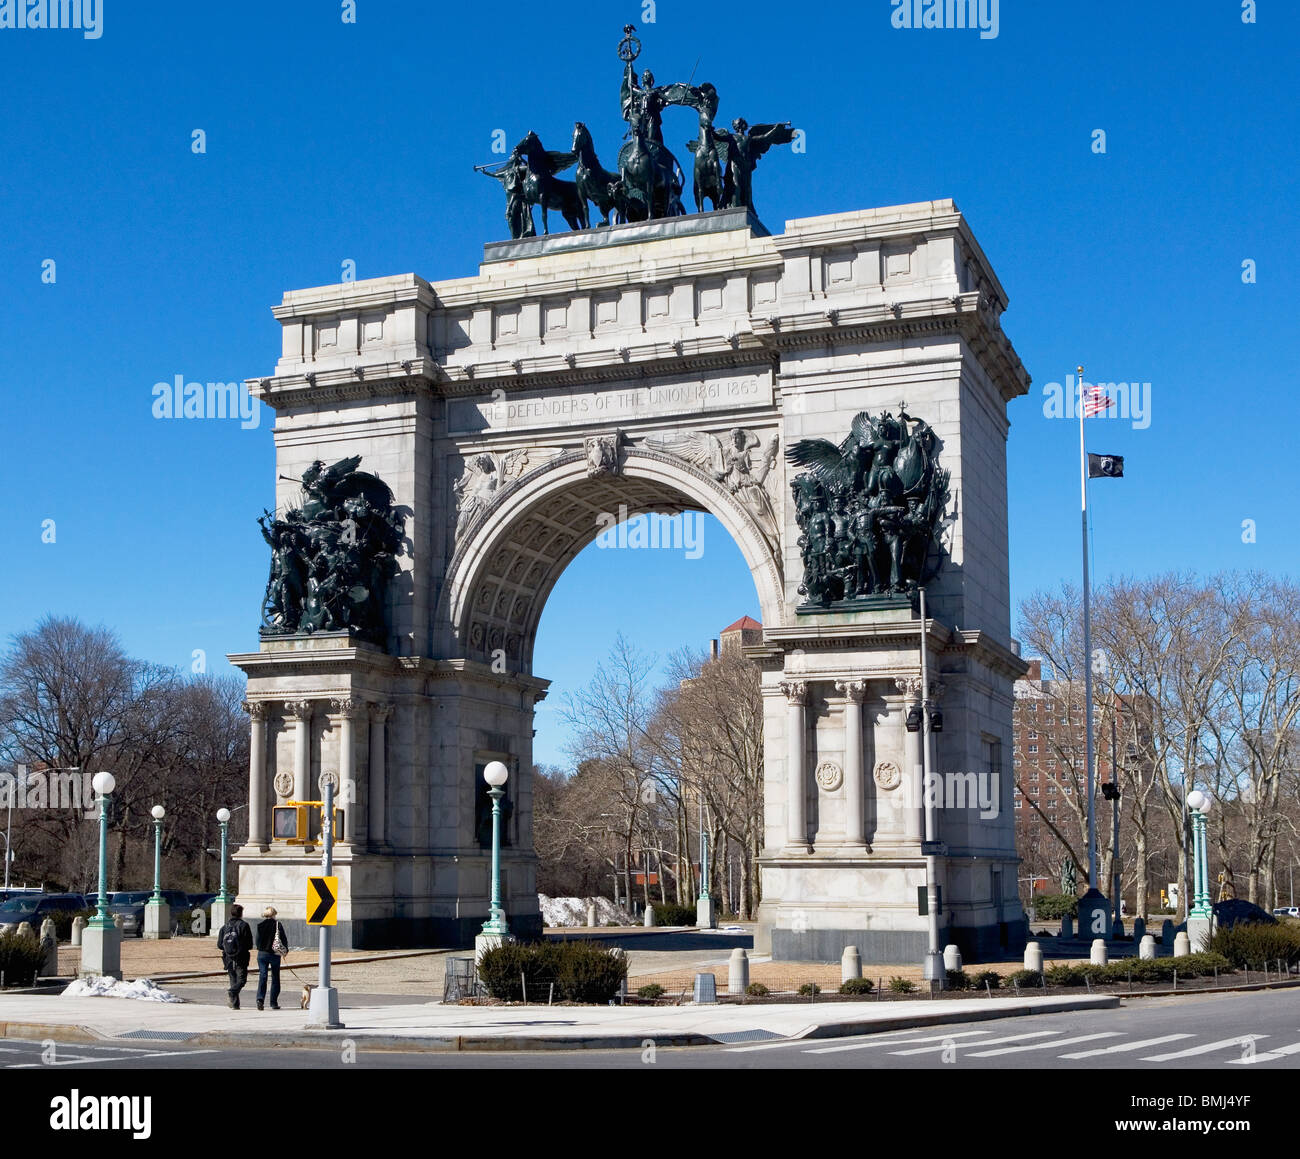 Monumento a los soldados y marineros en arco de piedra Foto de stock